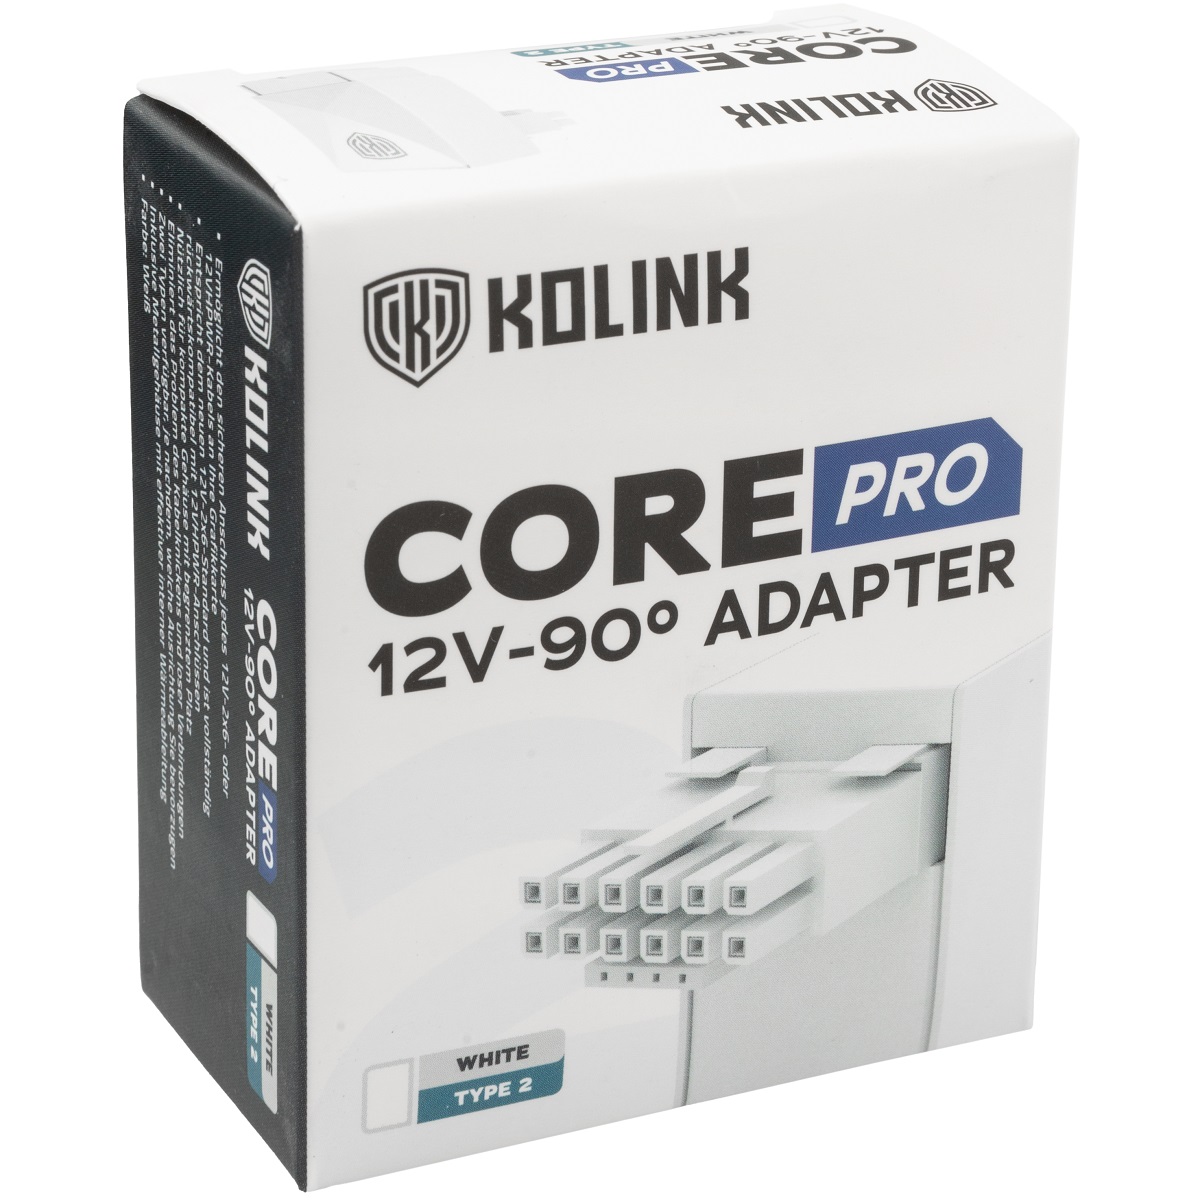 Kolink - Kolink Core Pro 12VHPWR 16-Pin 90 Degree Adapter - Type 2 - White